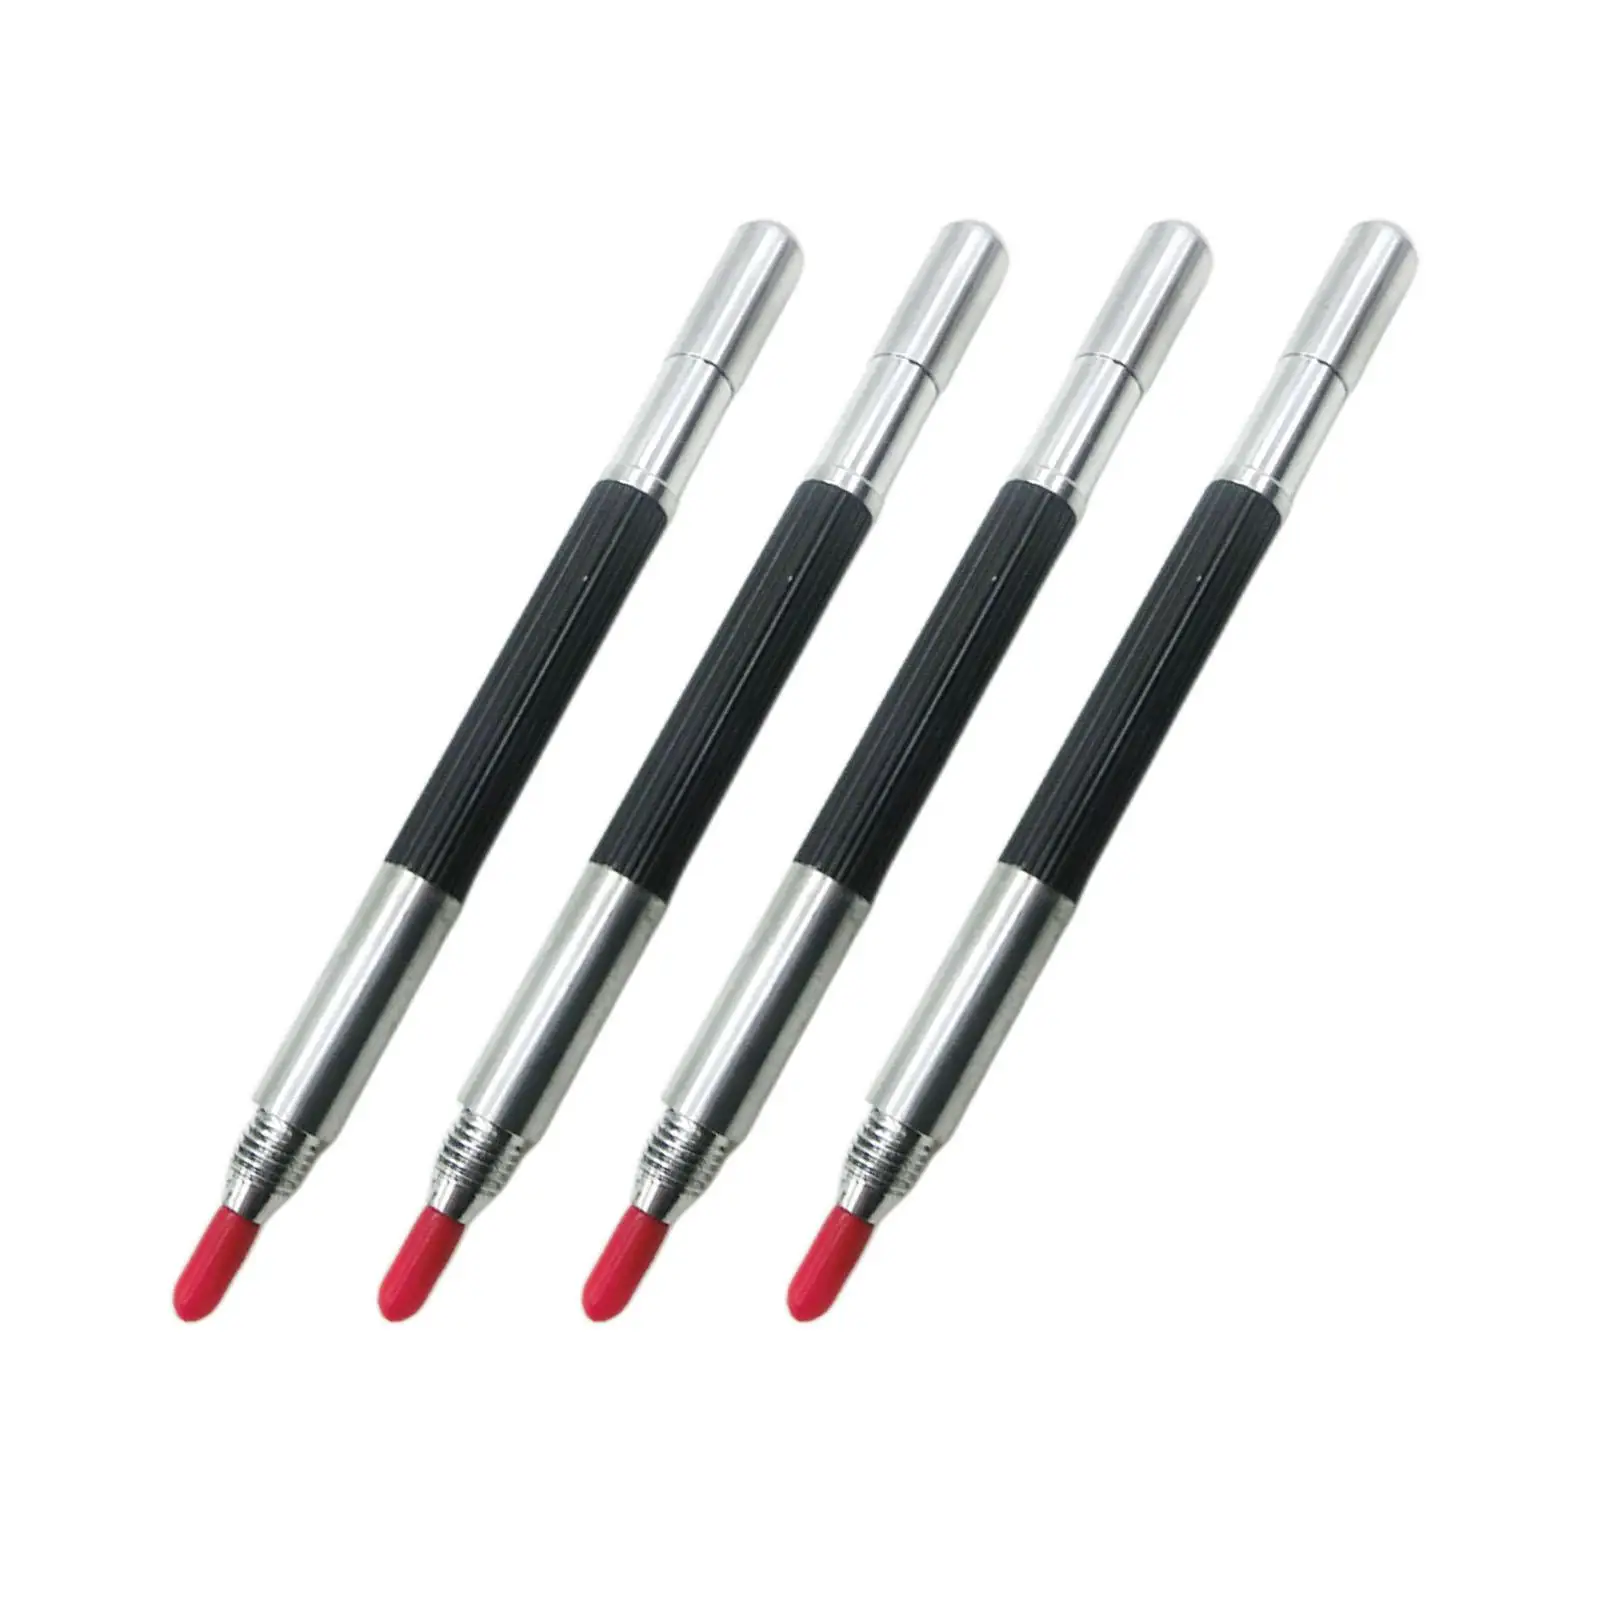 4x Engraving Marking Pen Durable Tungsten Carbide Tip Scriber Pens for